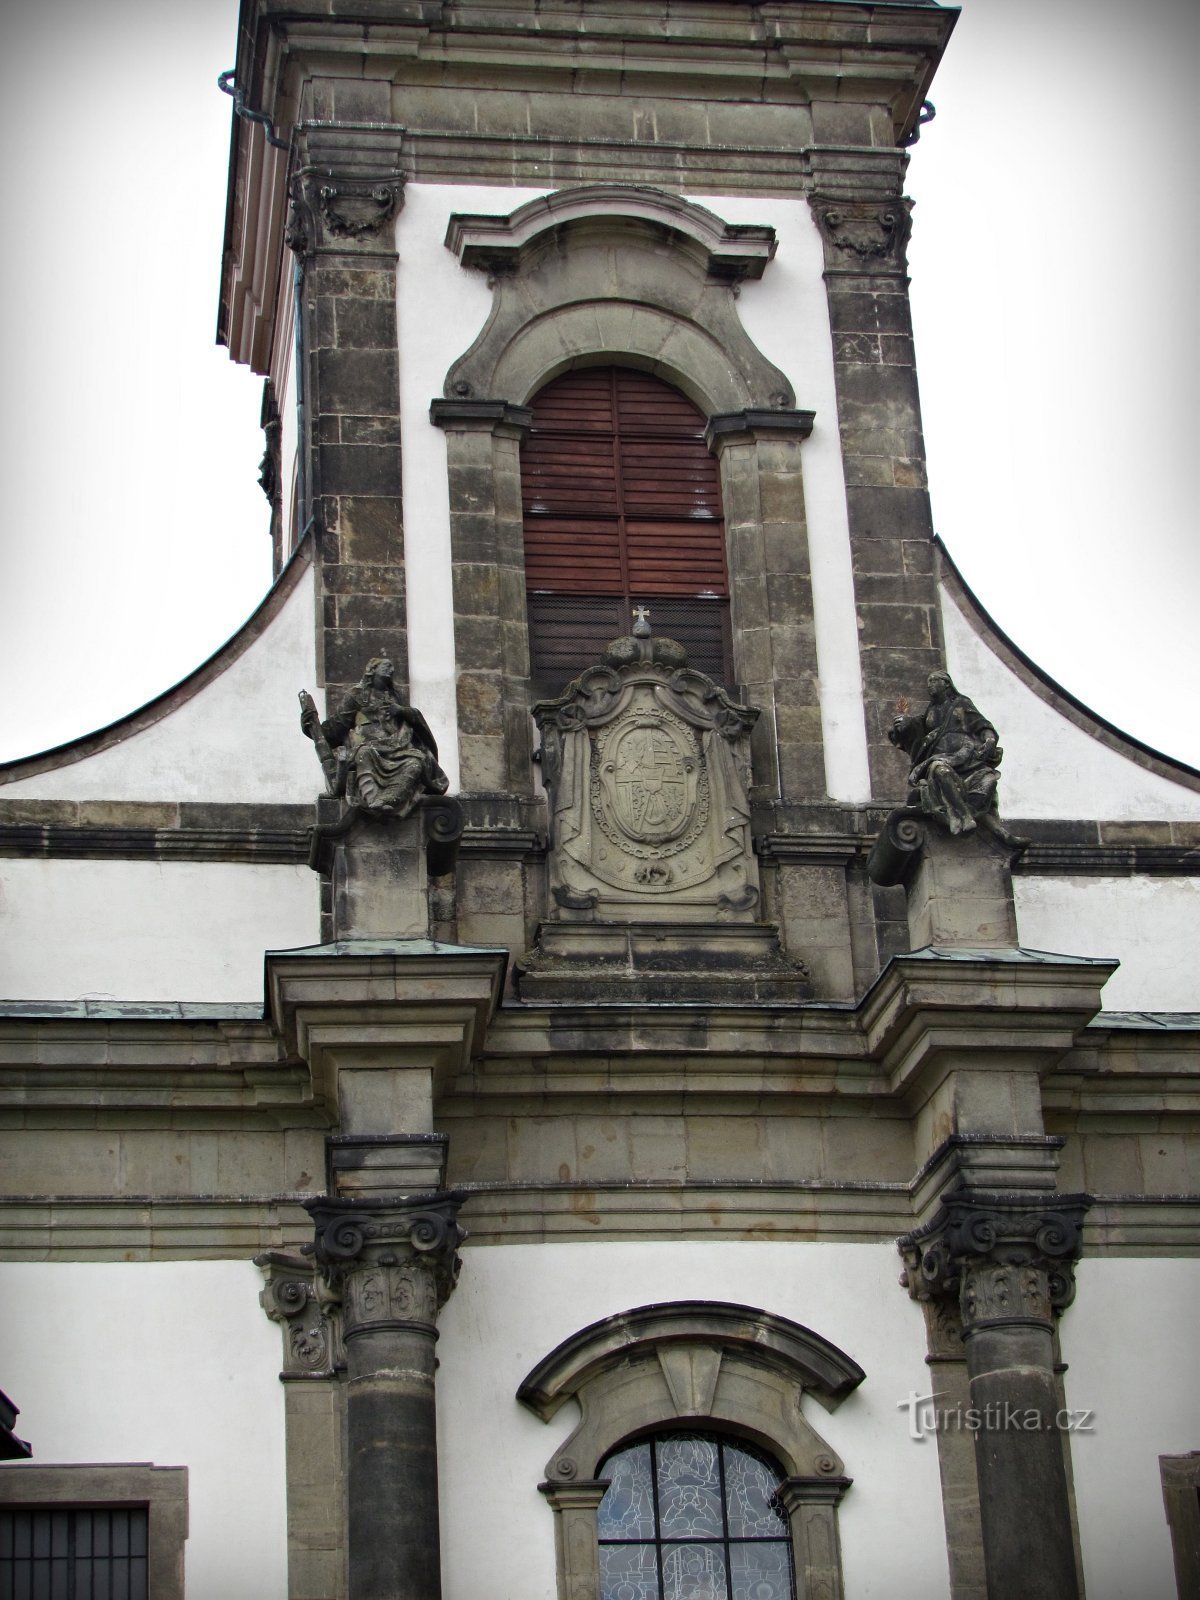 Ústí nad Orlicí - tòa nhà linh thiêng quan trọng nhất